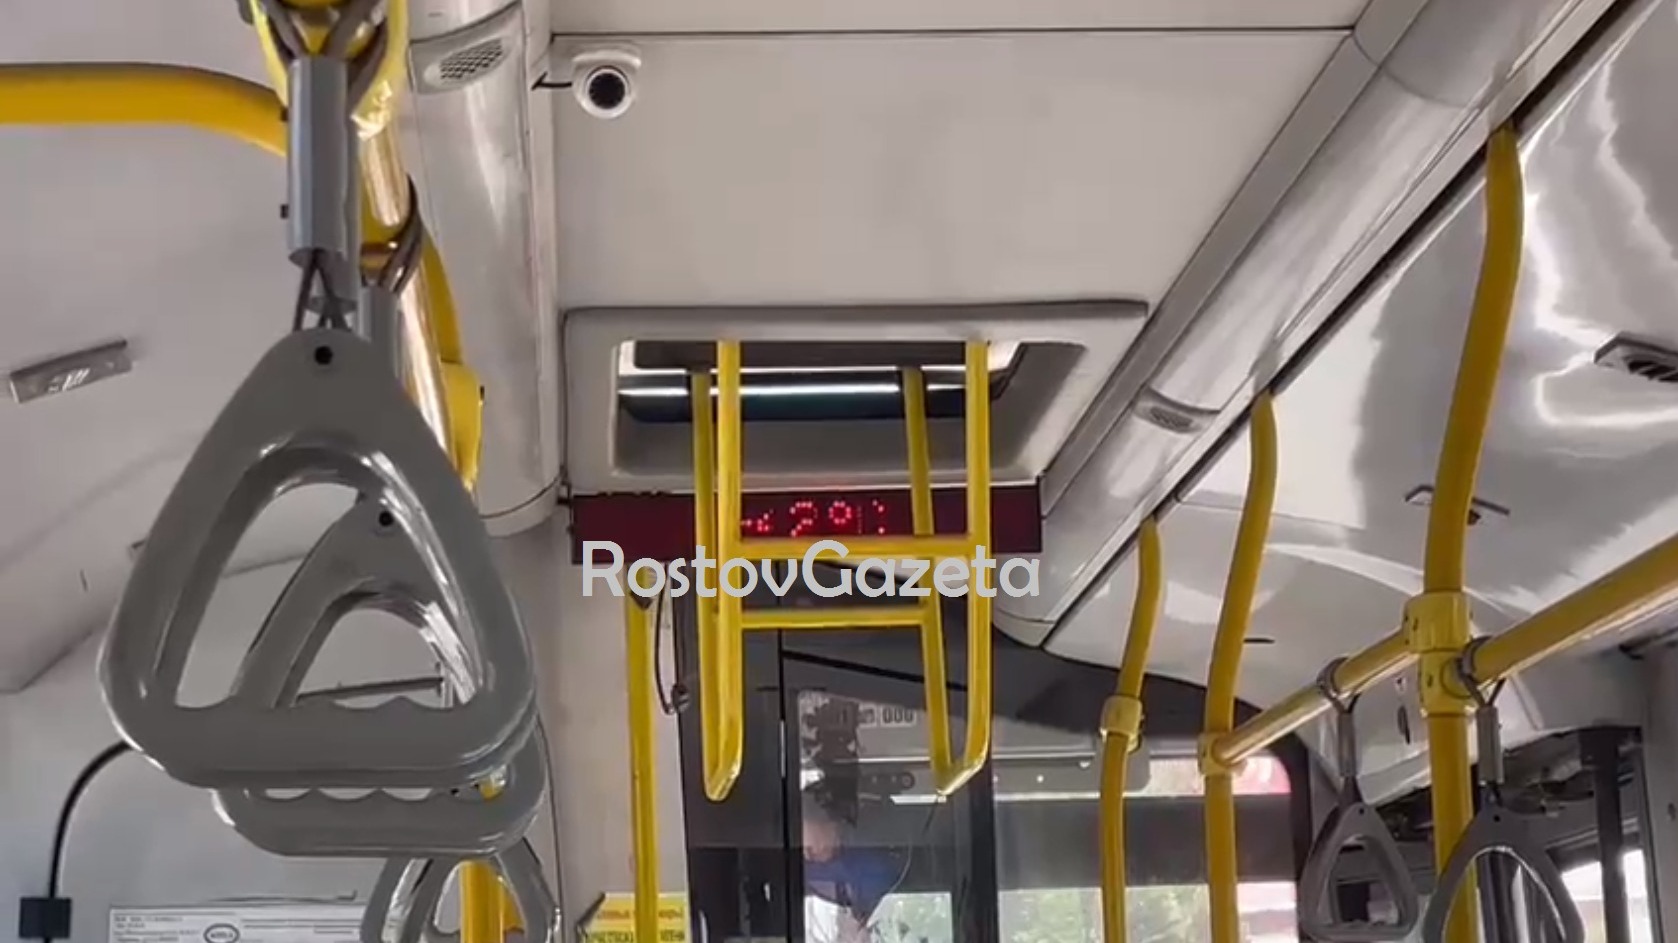 Ростовчане жалуются на жару в +42 градуса в городских автобусах